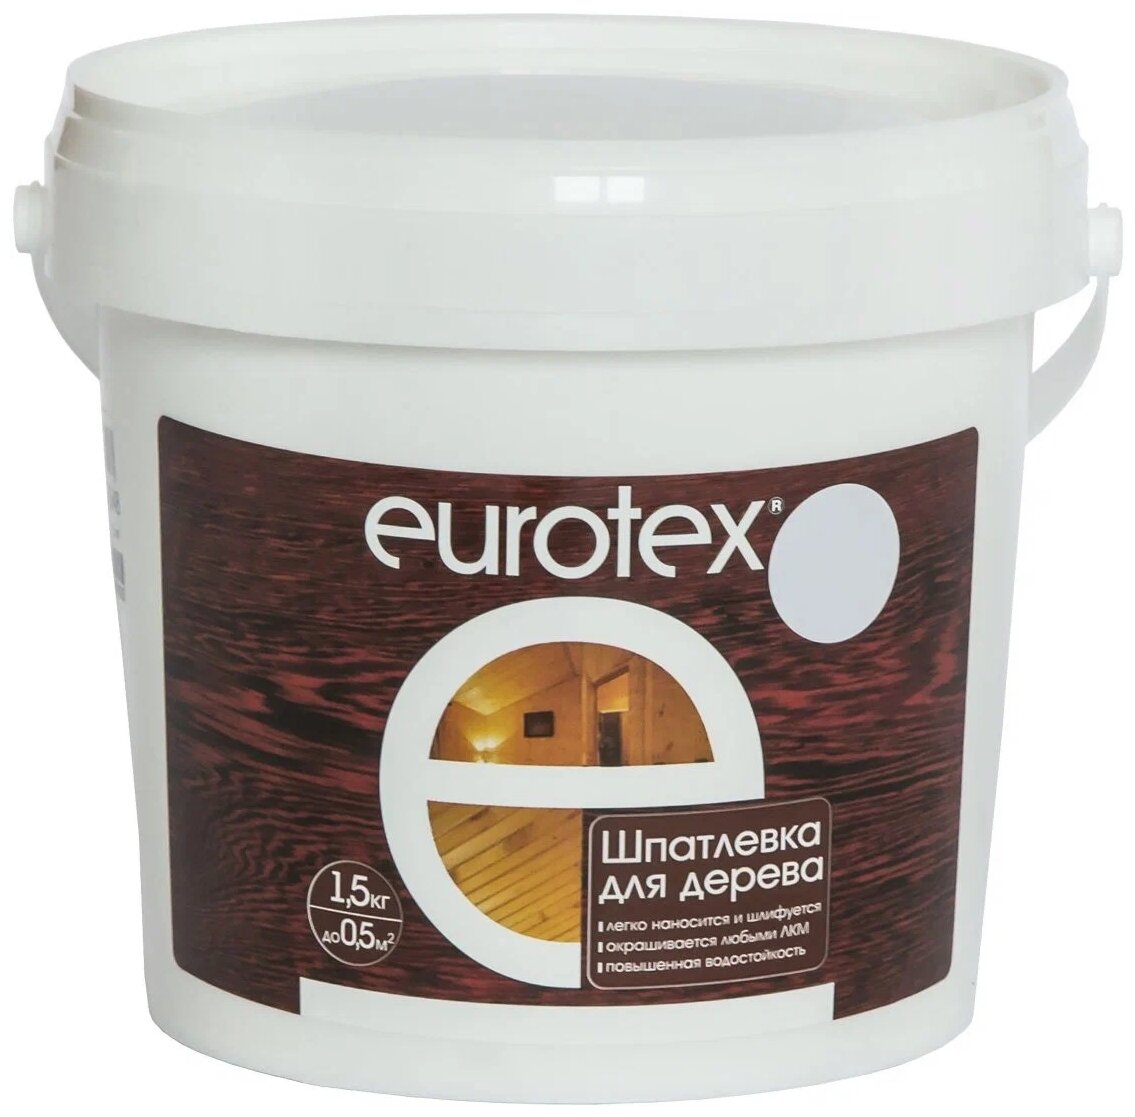 Шпатлевка EUROTEX для дерева